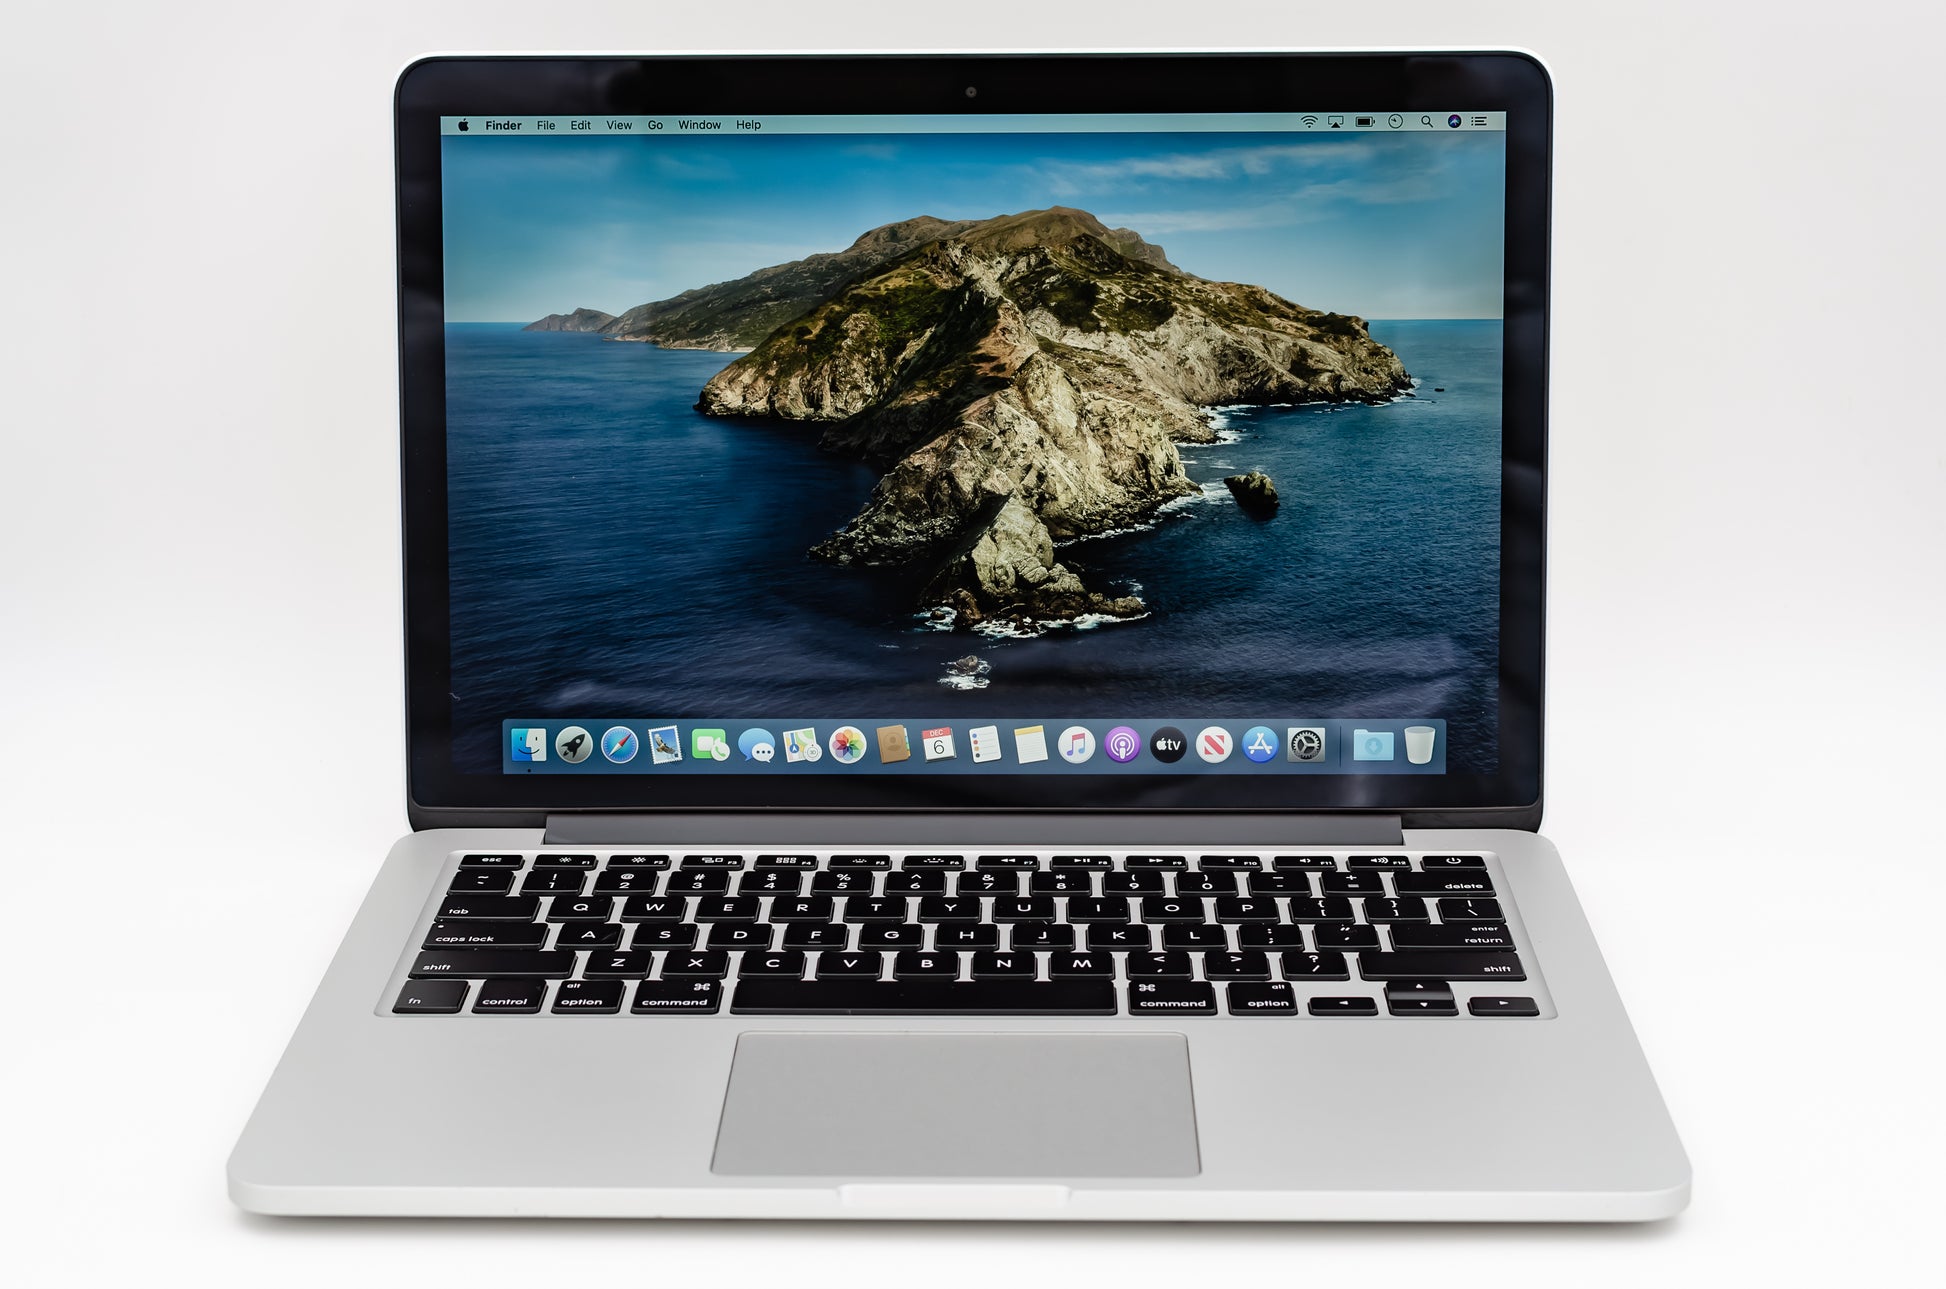 apple-mid-2014-13.3-inch-macbook-pro-retina-a1502-aluminum-dci5 - 2.6ghz processor, 8gb ram, 5100 - 1.5gb gpu-mgx82ll/a-1